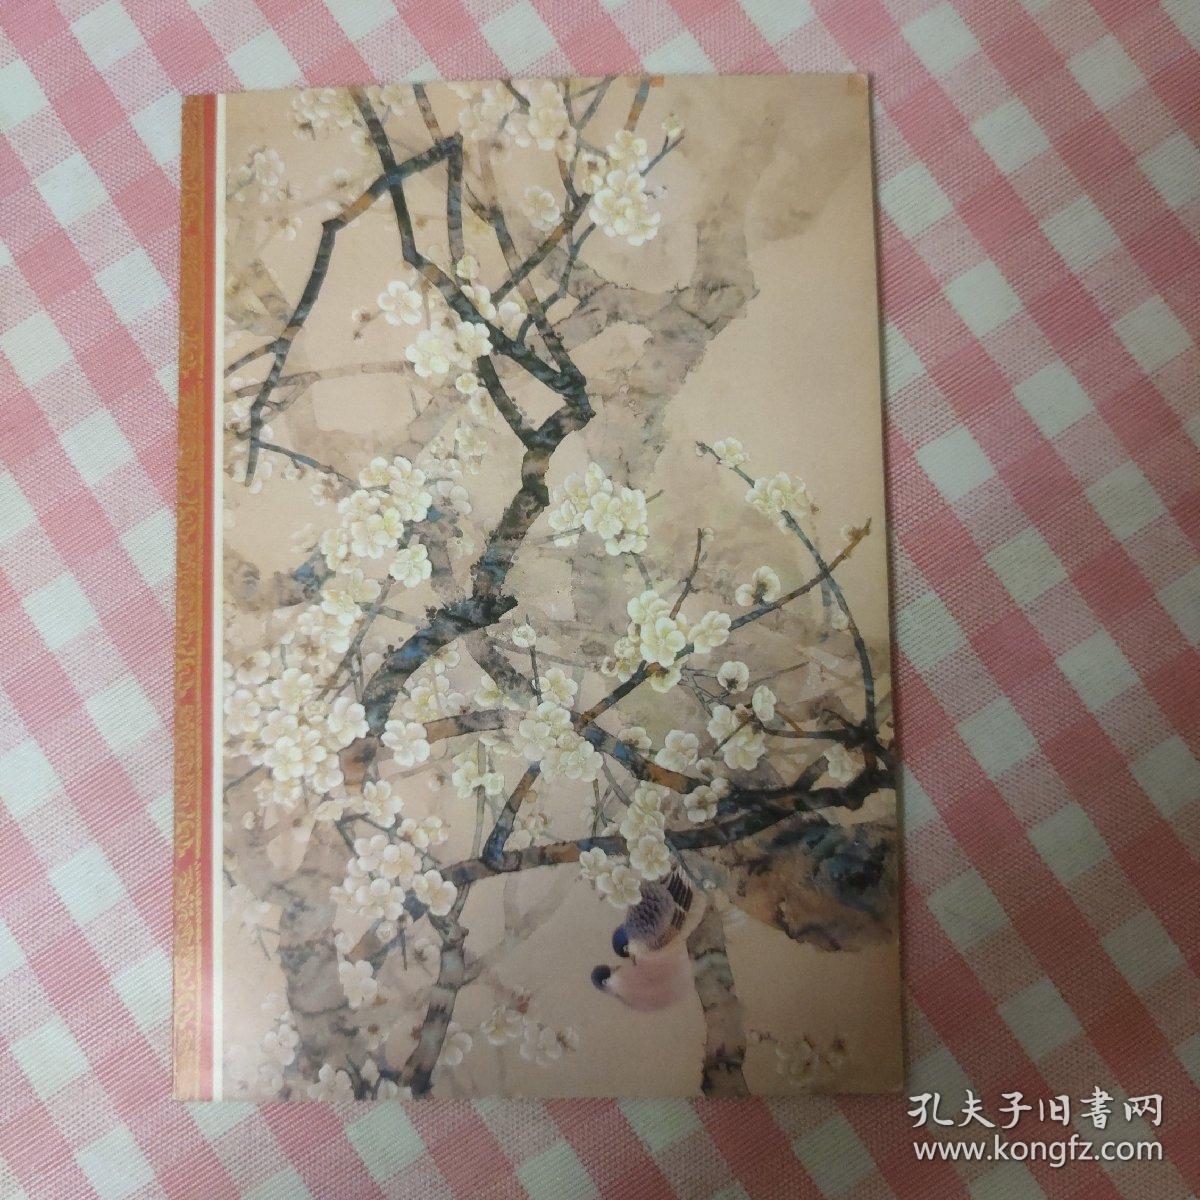 荣宝斋出版的 老贺年卡 鸟语花香 张桂徵作品